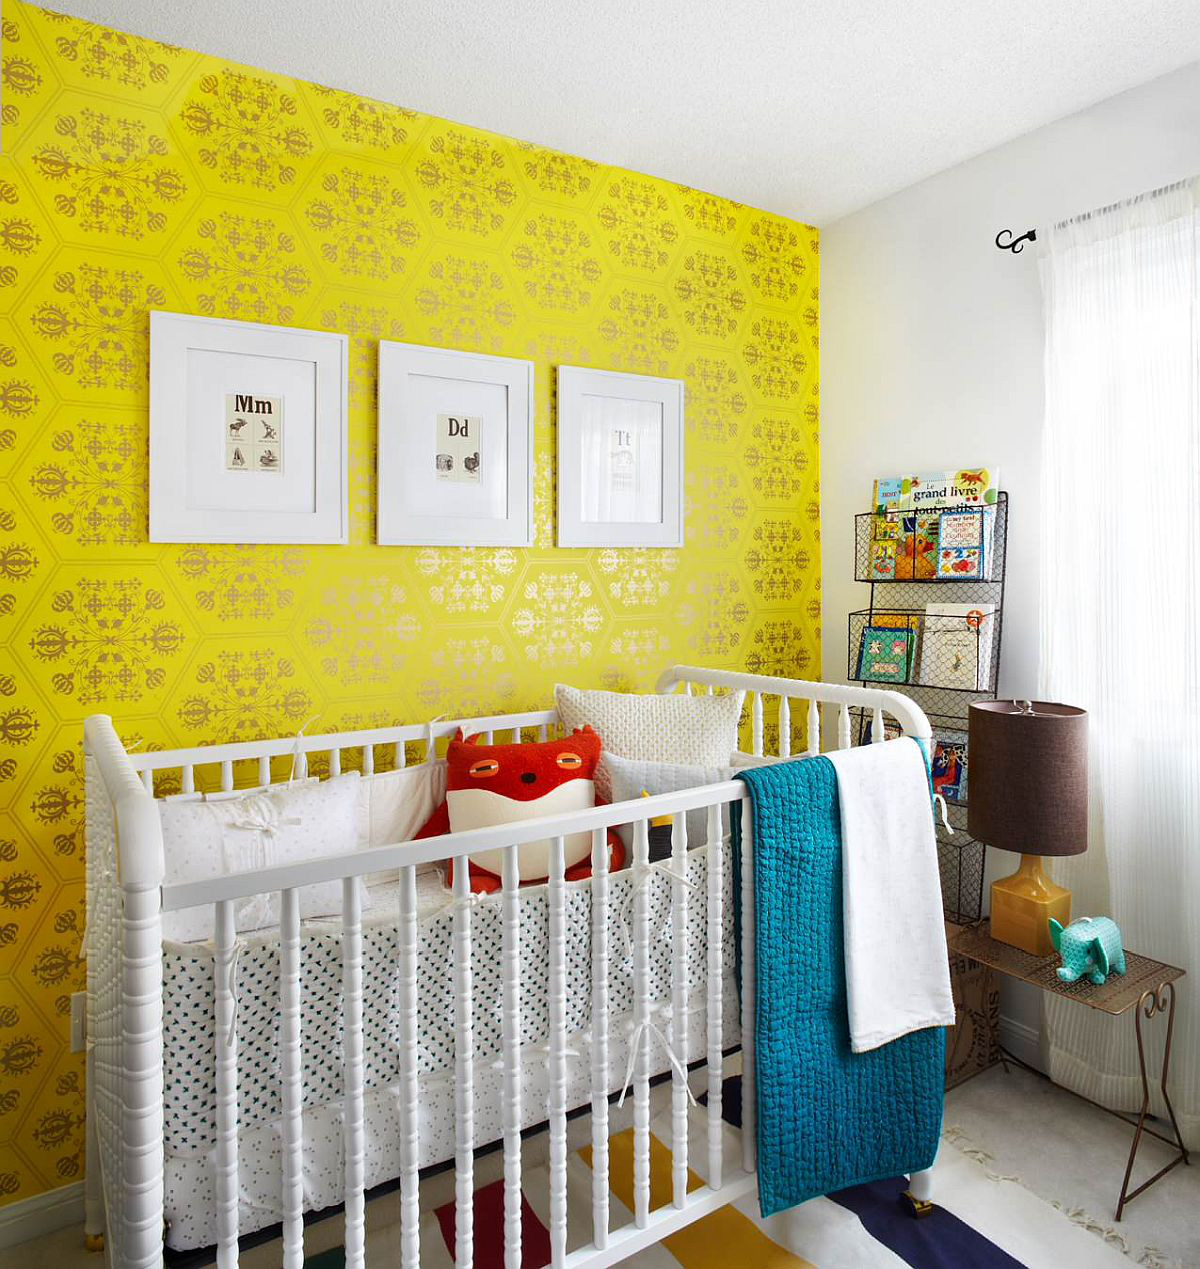 Giấy dán tường màu vàng đẹp mắt với họa tiết sang trọng cho căn phòng theo phong cách đương đại của bé trên nền màu trung tính